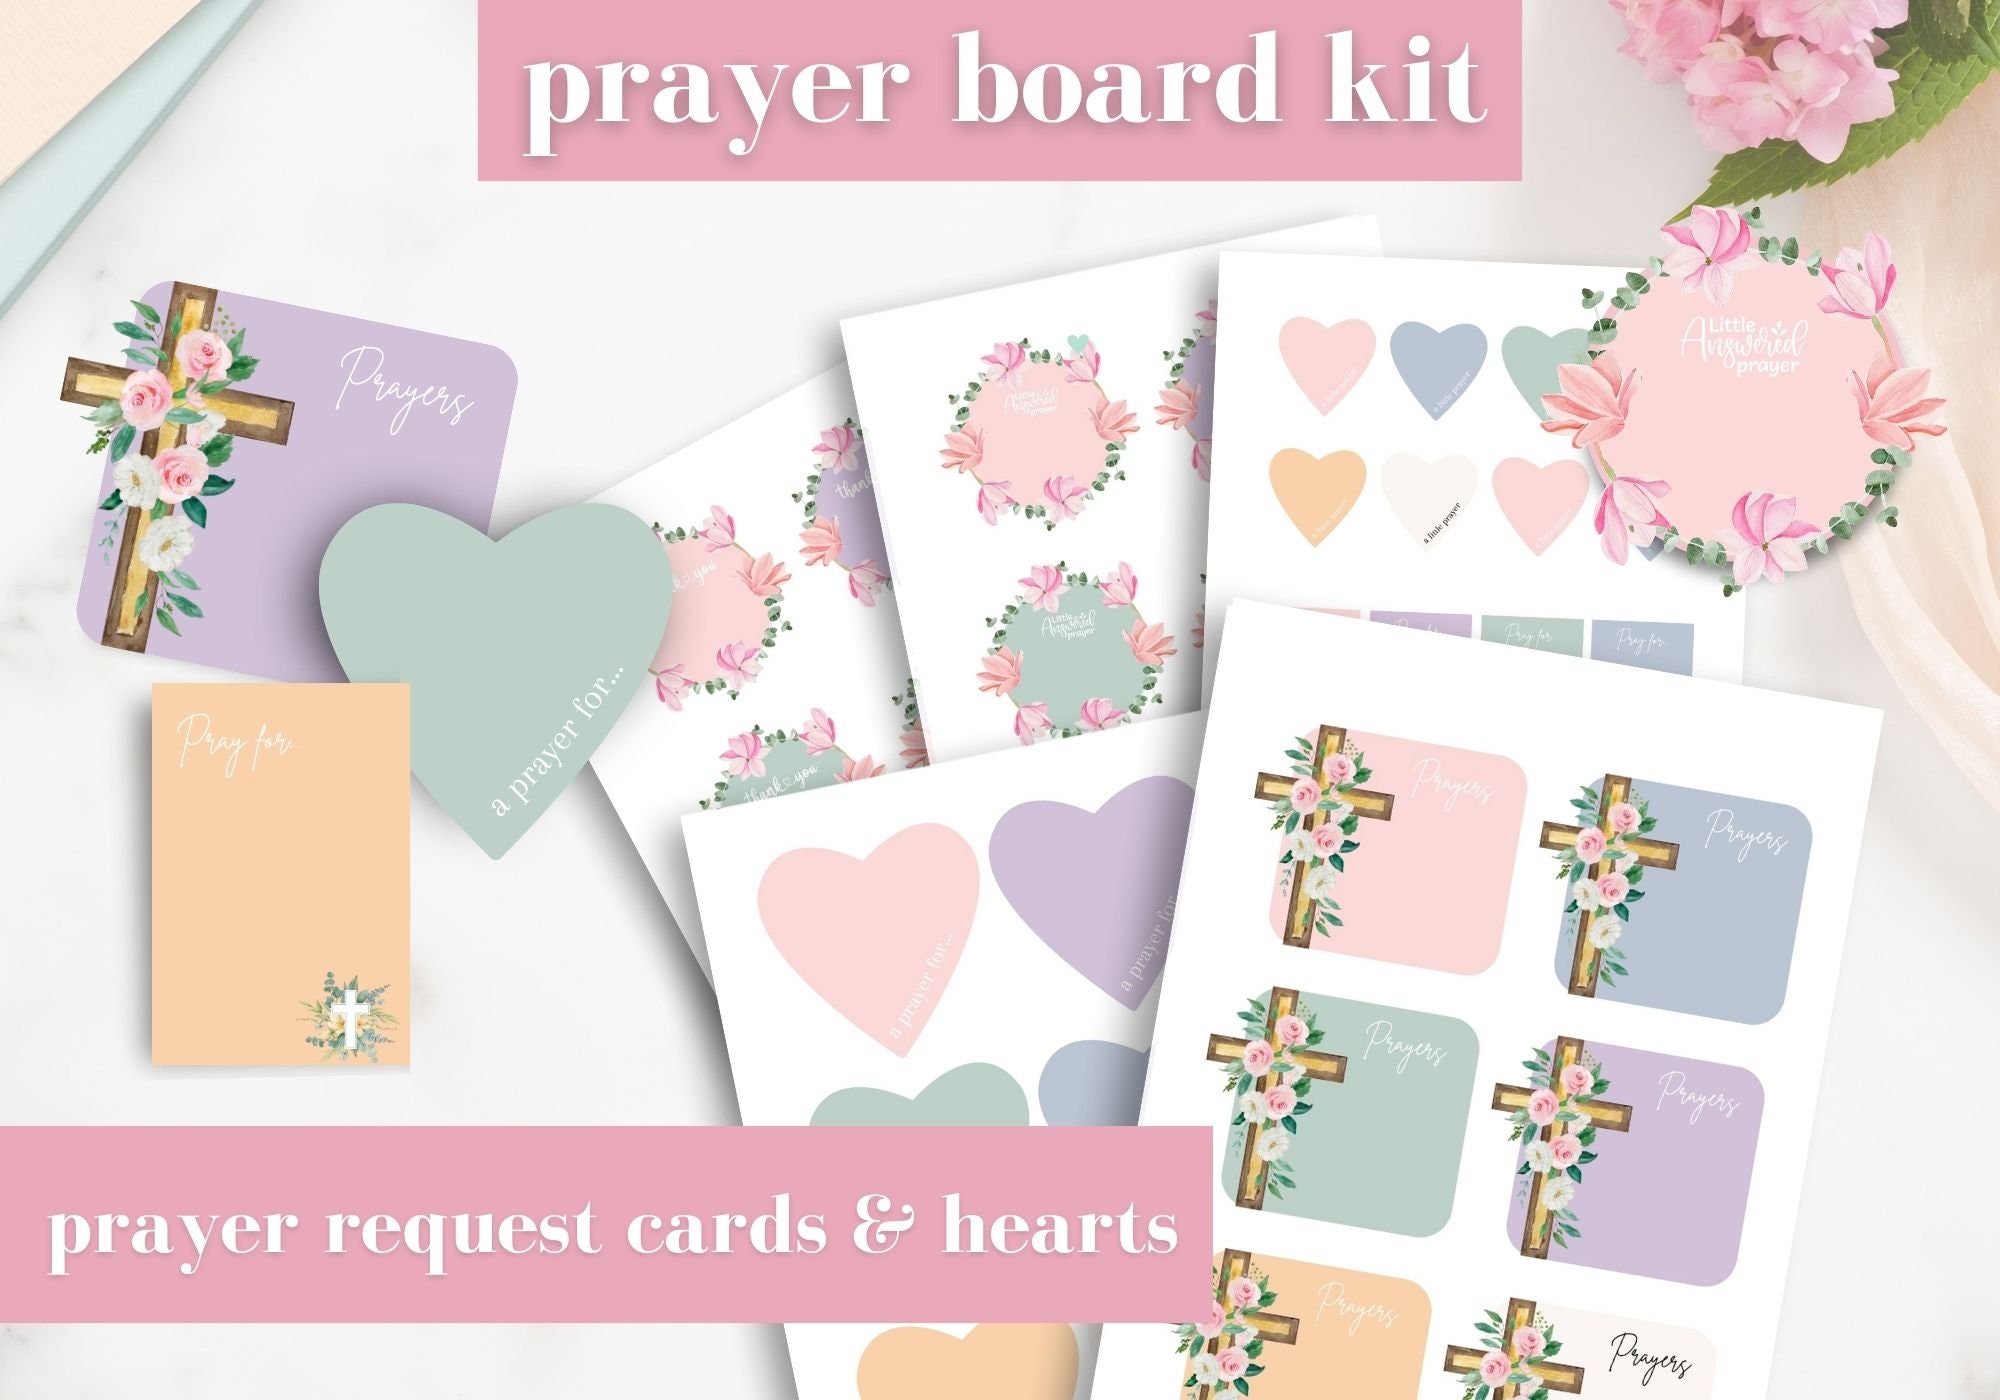 Prayer Board Kit, Prayer Board Printable, Daily Prayer Board